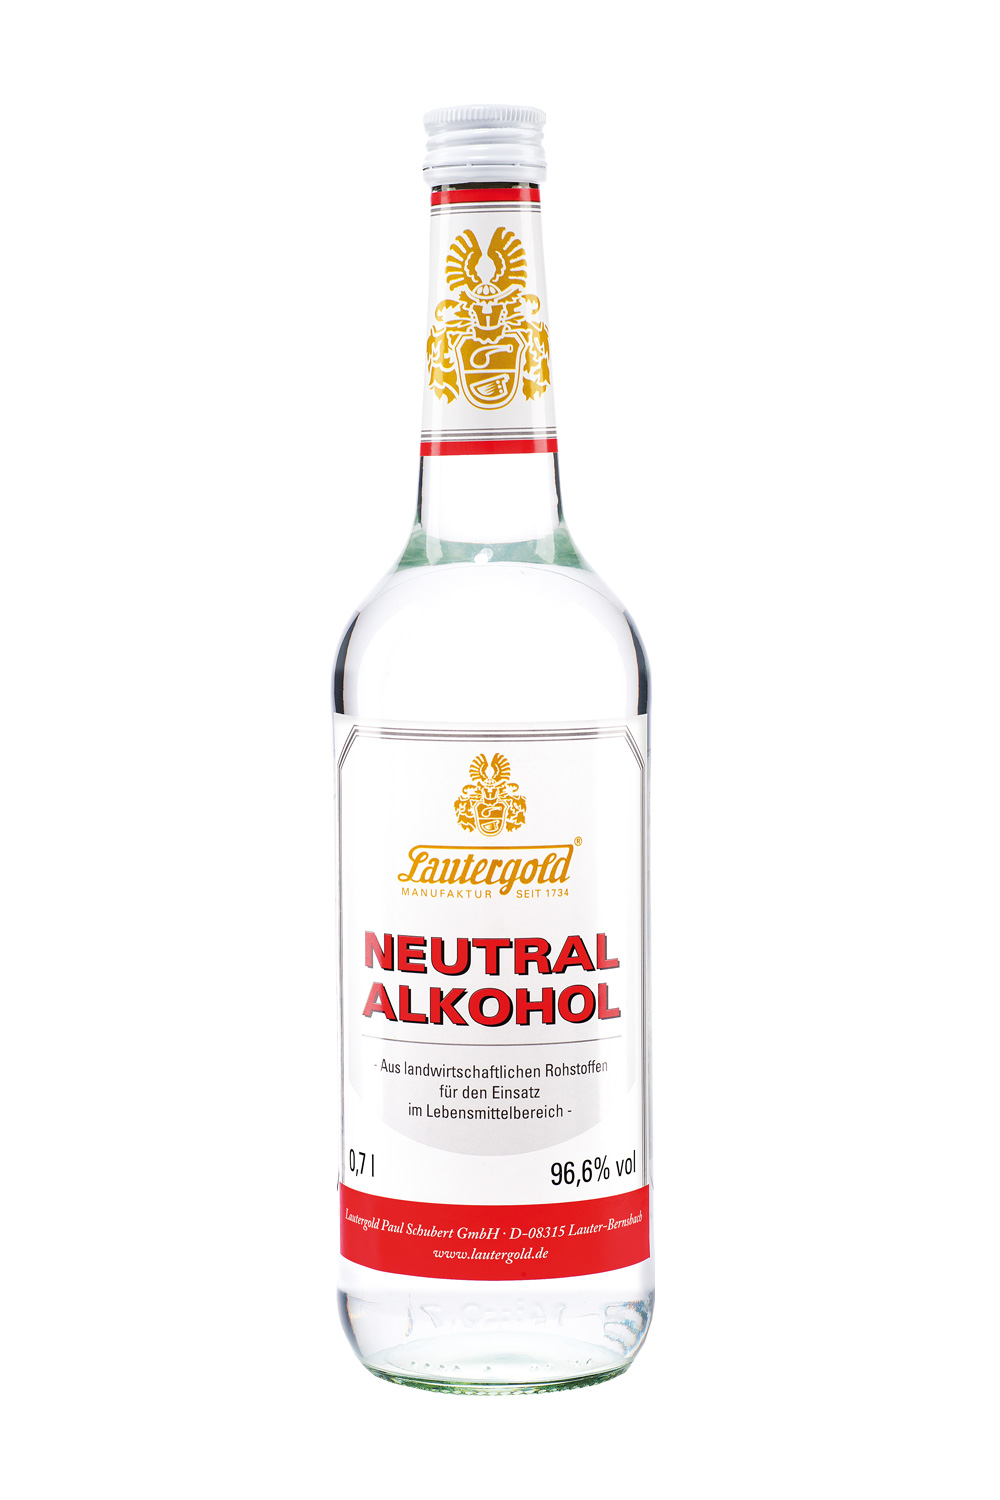 Neutralalkohol